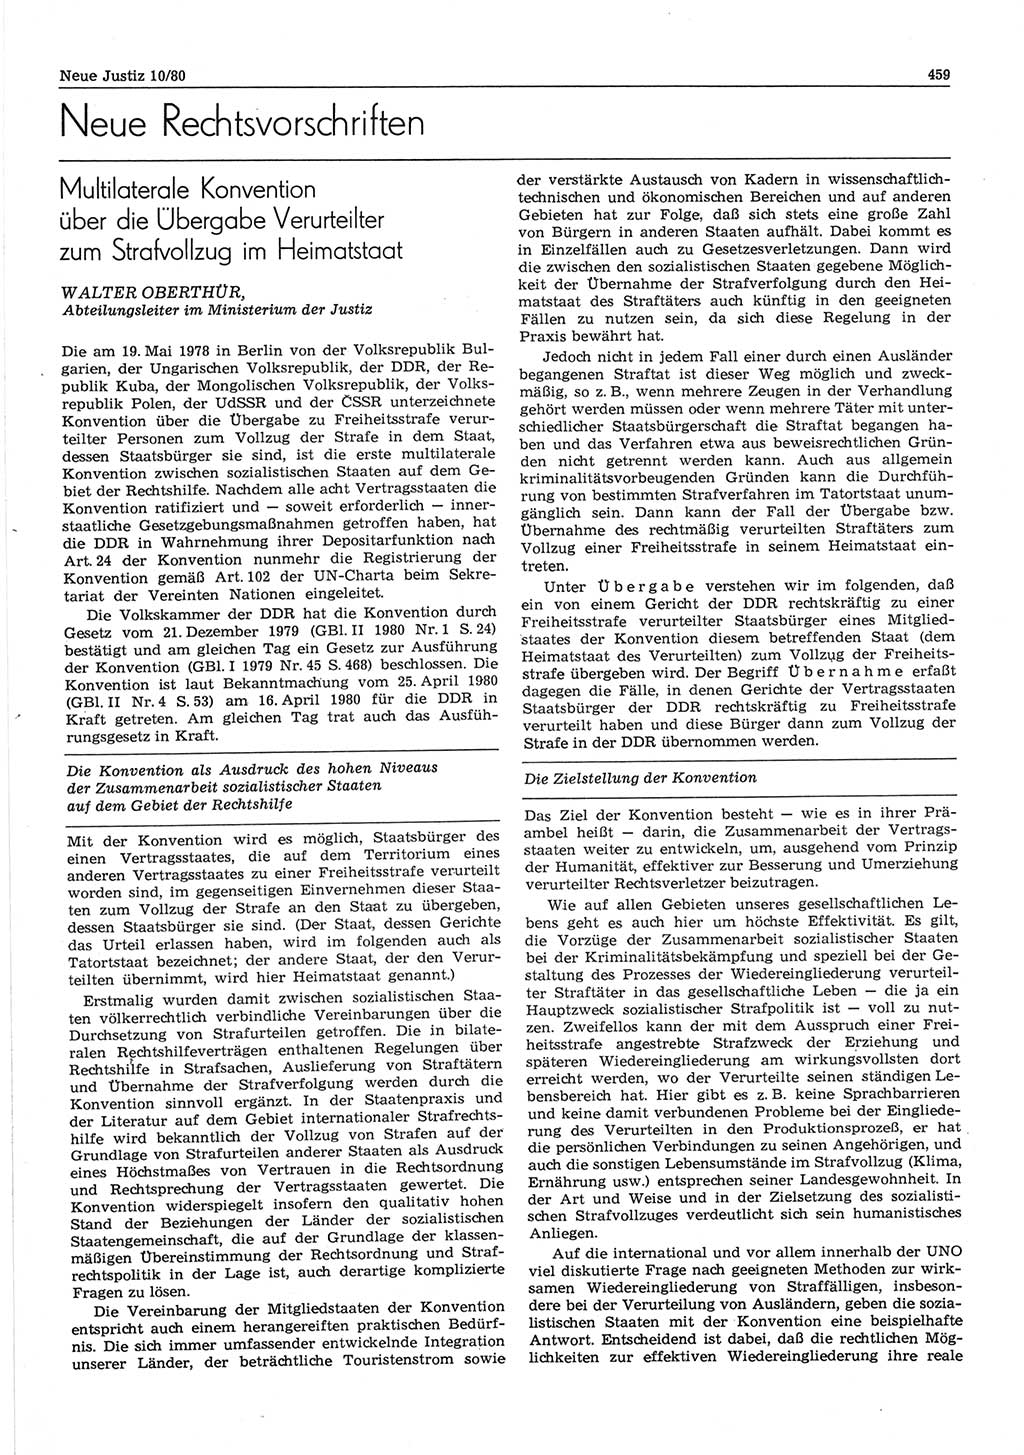 Neue Justiz (NJ), Zeitschrift für sozialistisches Recht und Gesetzlichkeit [Deutsche Demokratische Republik (DDR)], 34. Jahrgang 1980, Seite 459 (NJ DDR 1980, S. 459)